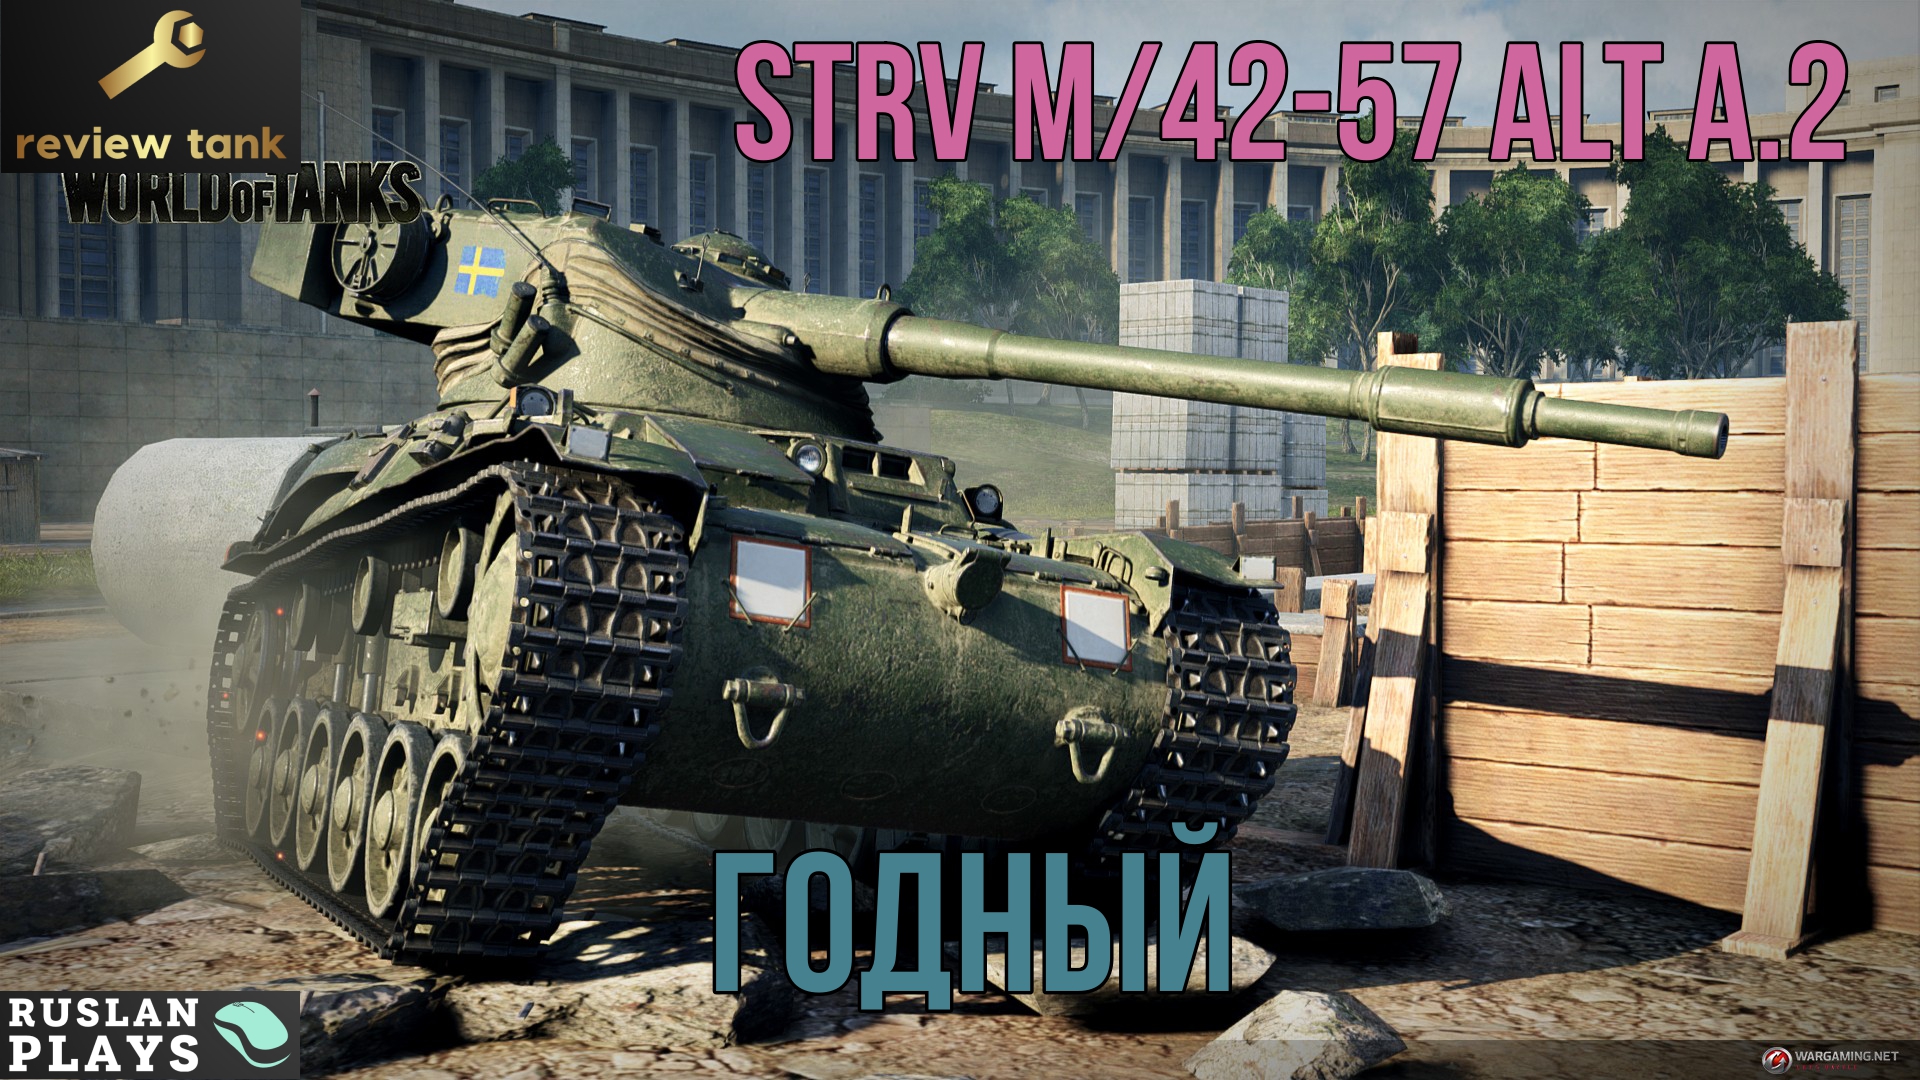 Мир танков 6 уровень. Strv m/42. Танки Швеции WOT. Танк в ворлд оф танк шведская. Strv m/42-57.